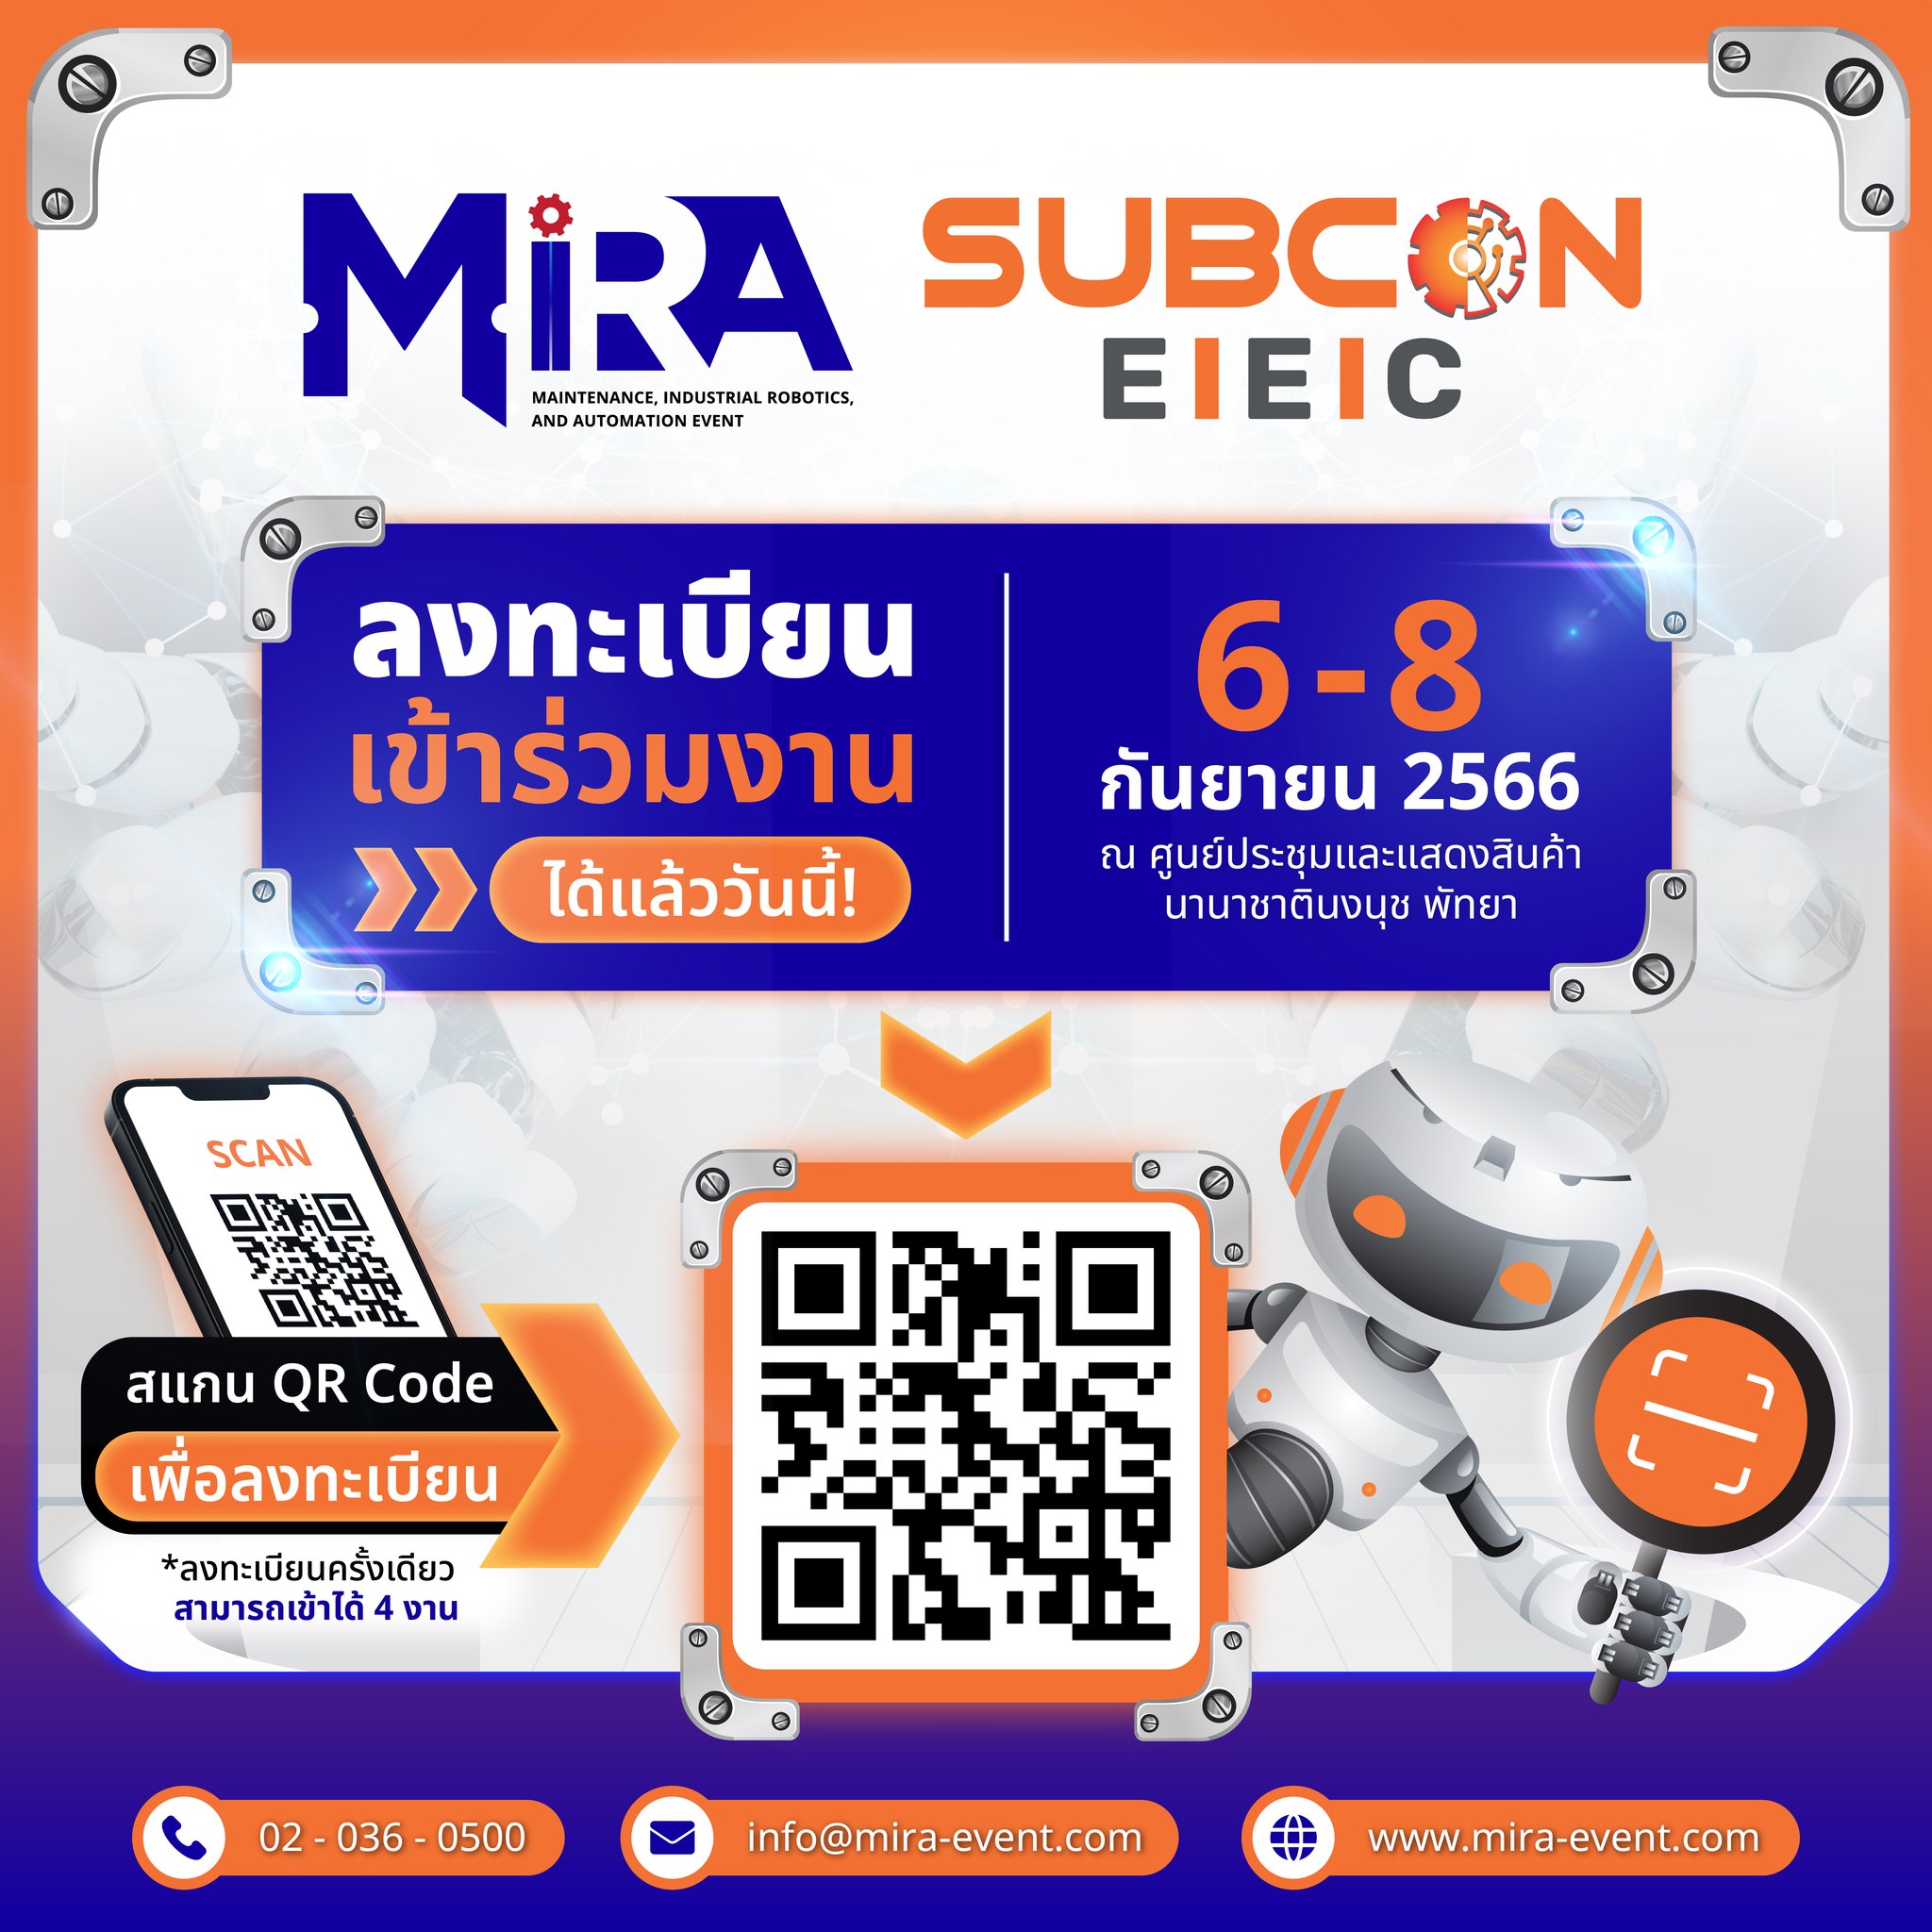 พบกับ บริษัท เลสโจฟอร์ส สปริงส์ แอนด์ เพรสซิ่งส์ (ประเทศไทย) จำกัด ได้ที่งาน MIRA & SUBCON EEC 2023